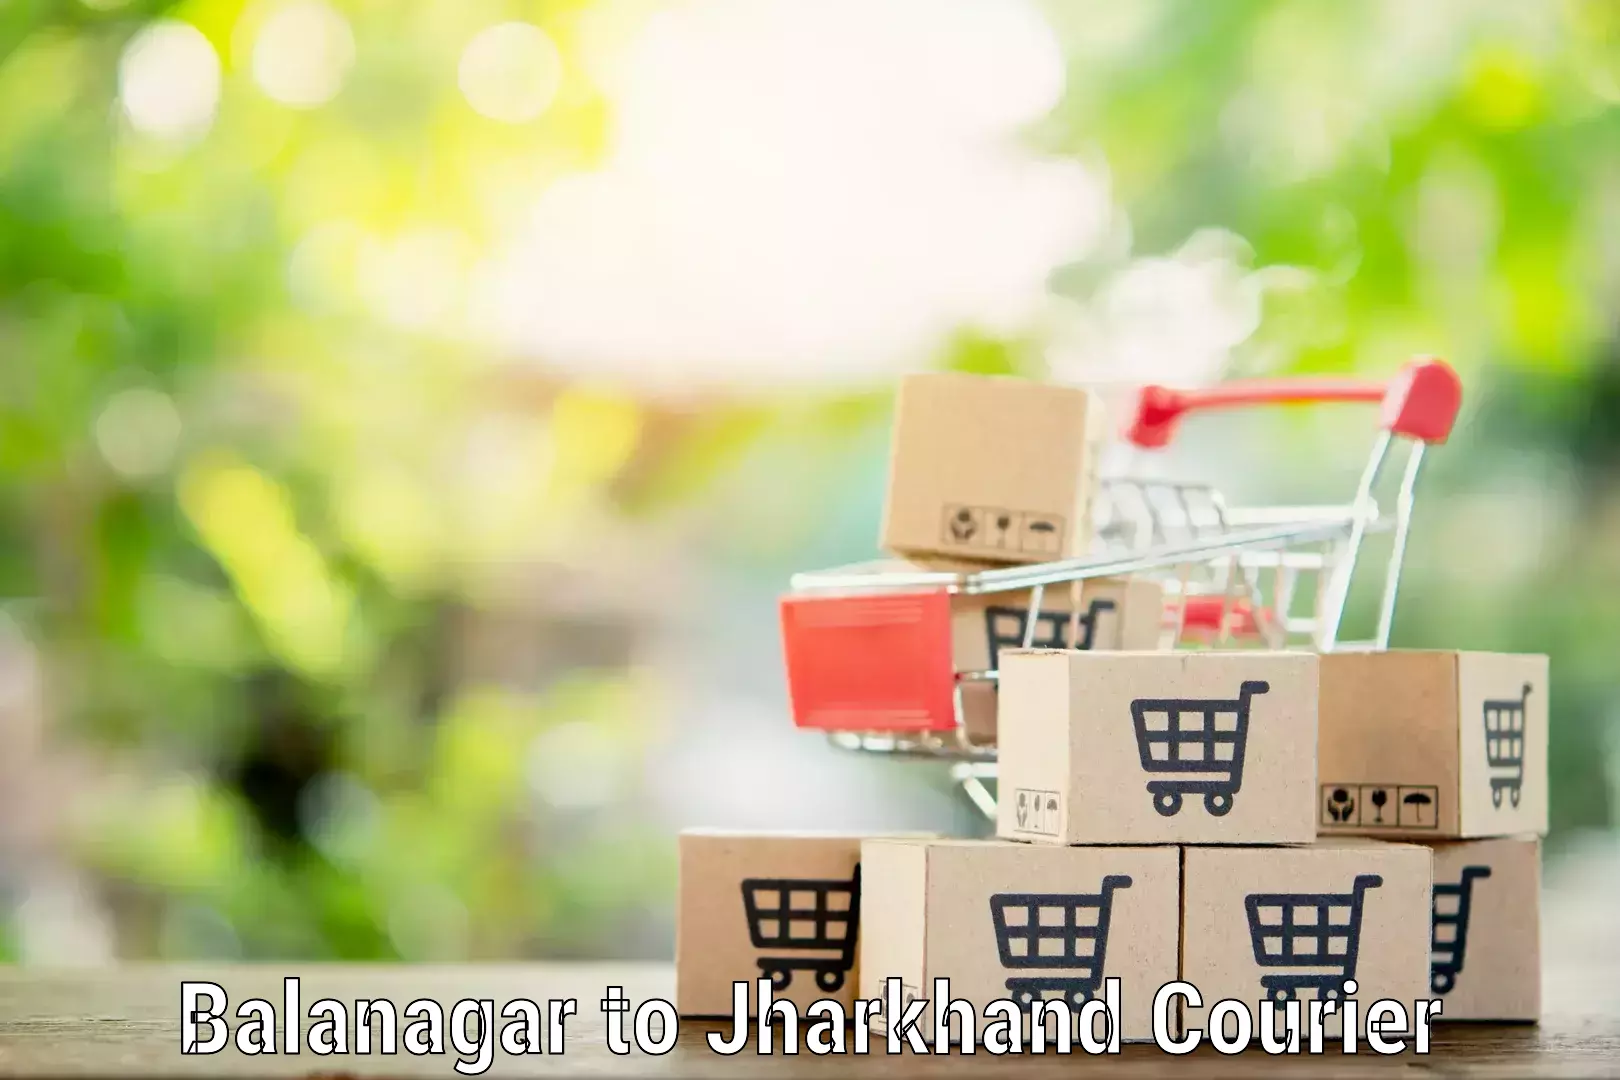 Professional packing services Balanagar to Rajdhanwar